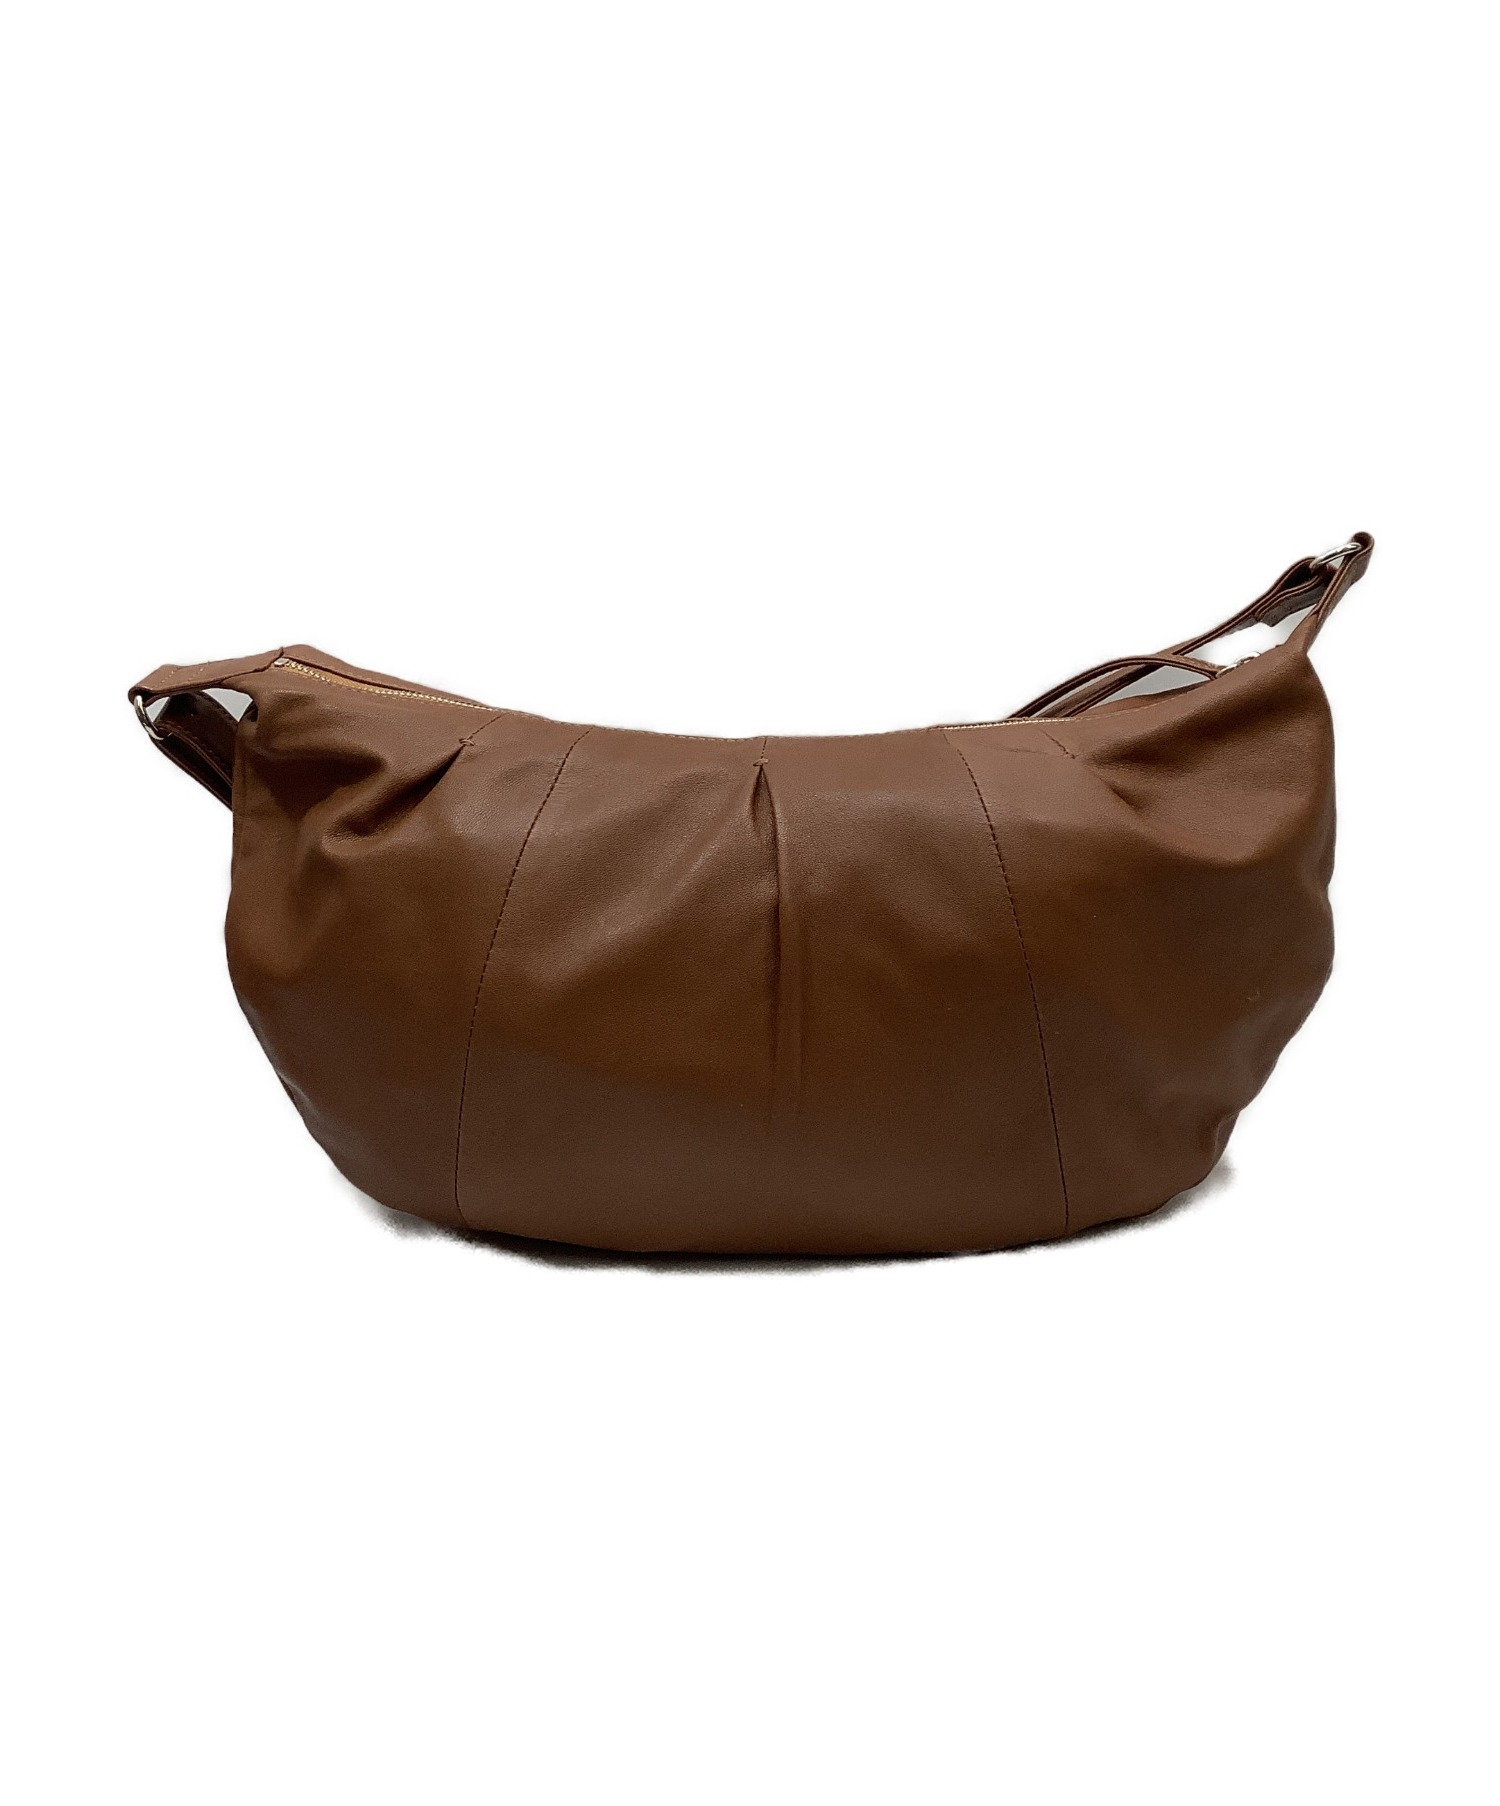 土屋鞄 (ツチヤカバン) シフォン・バルーンショルダーバッグ キャメル